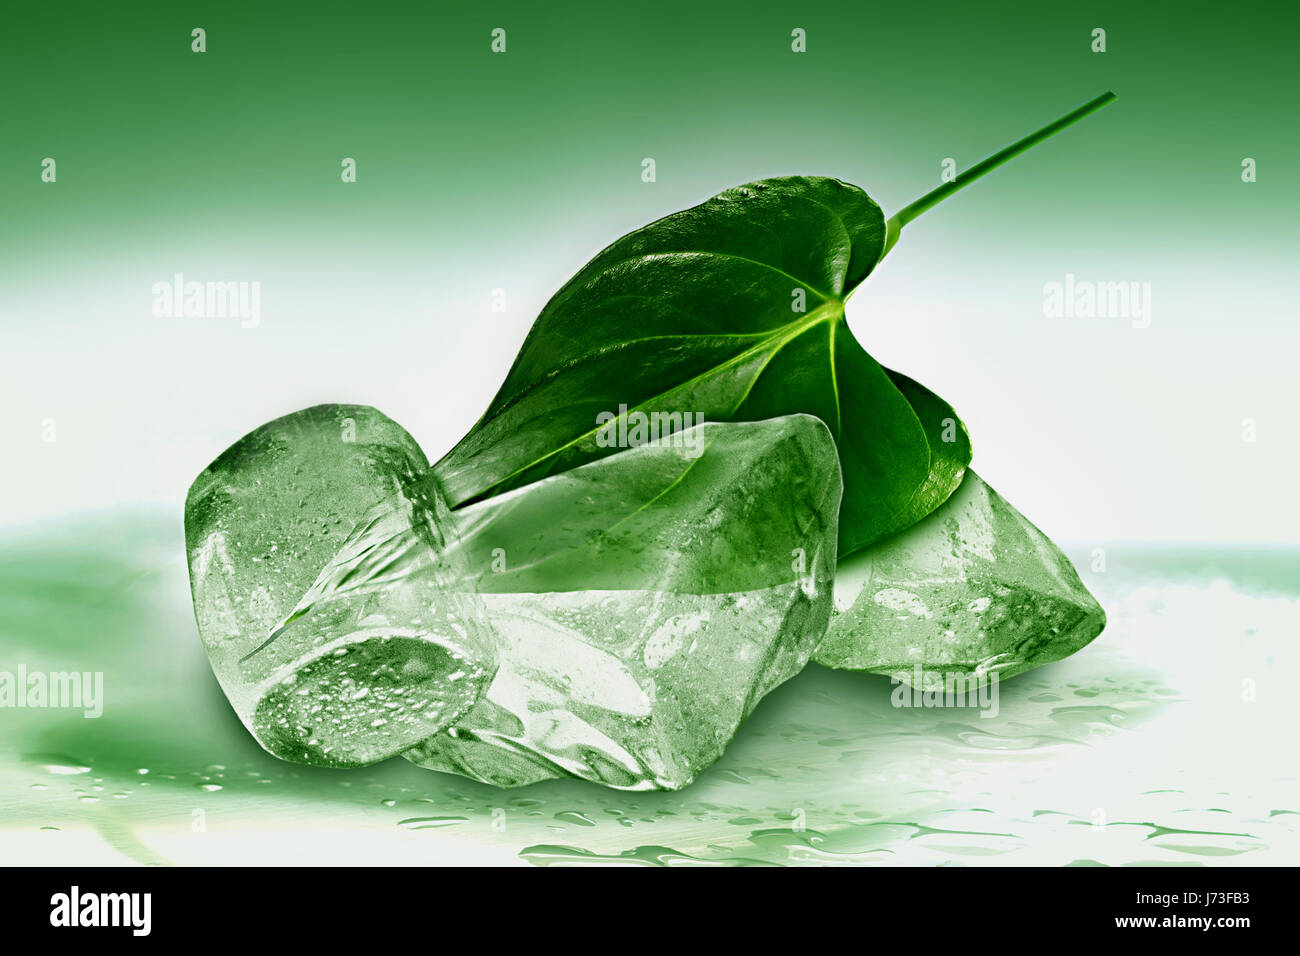 Blatt kalt gefroren Einfrieren frisches grünes Eis essen Nahrungsmittel Erhaltung Wartung Stockfoto